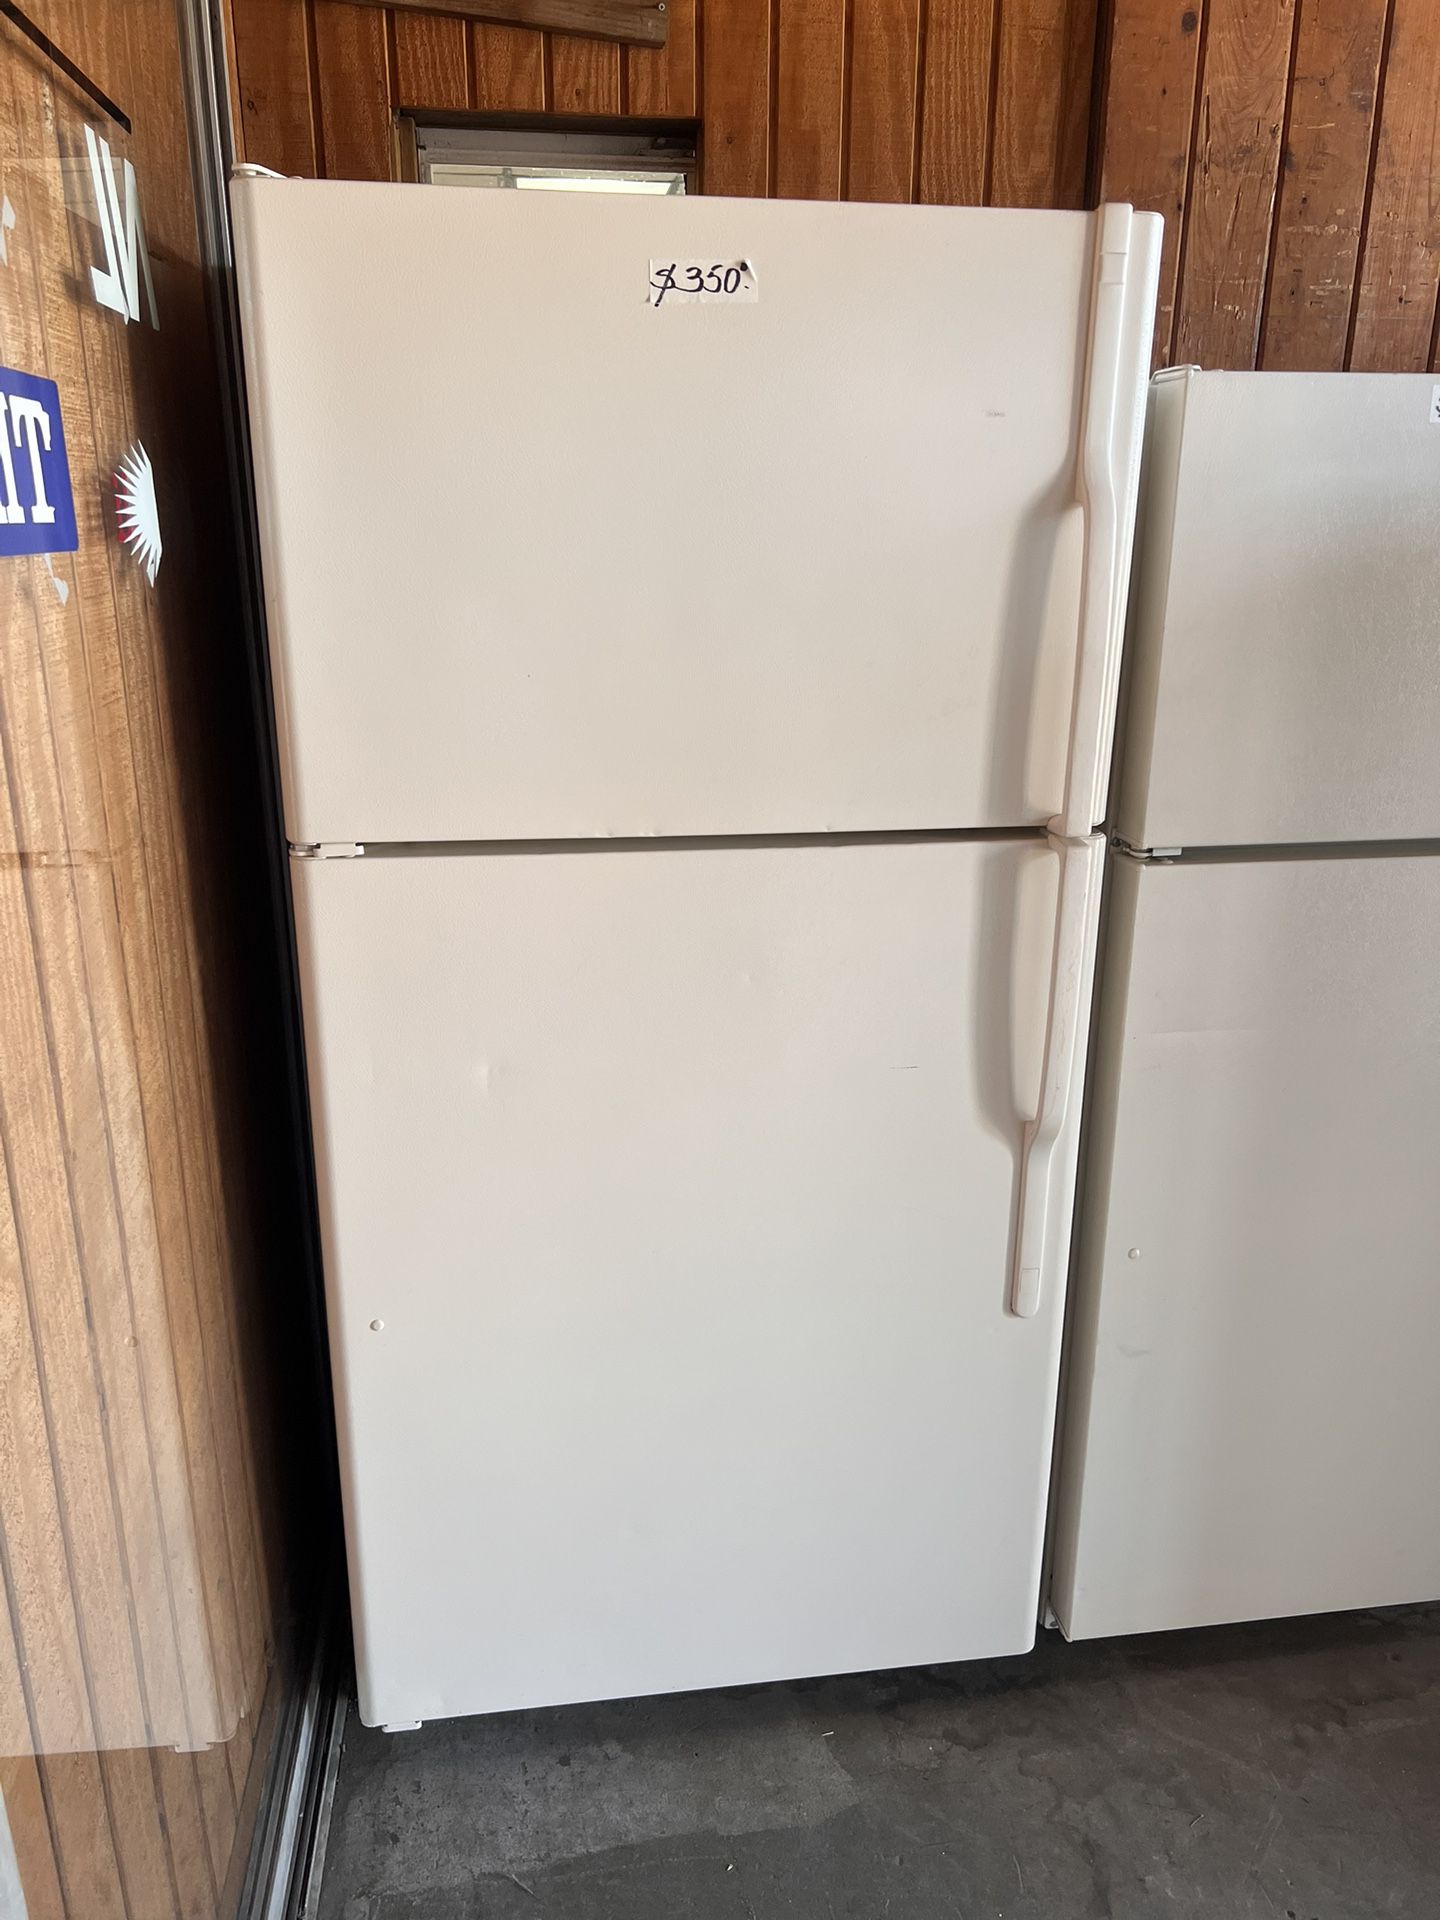 33” Wide Beige Refrigerator Top Freezer Working Condition 